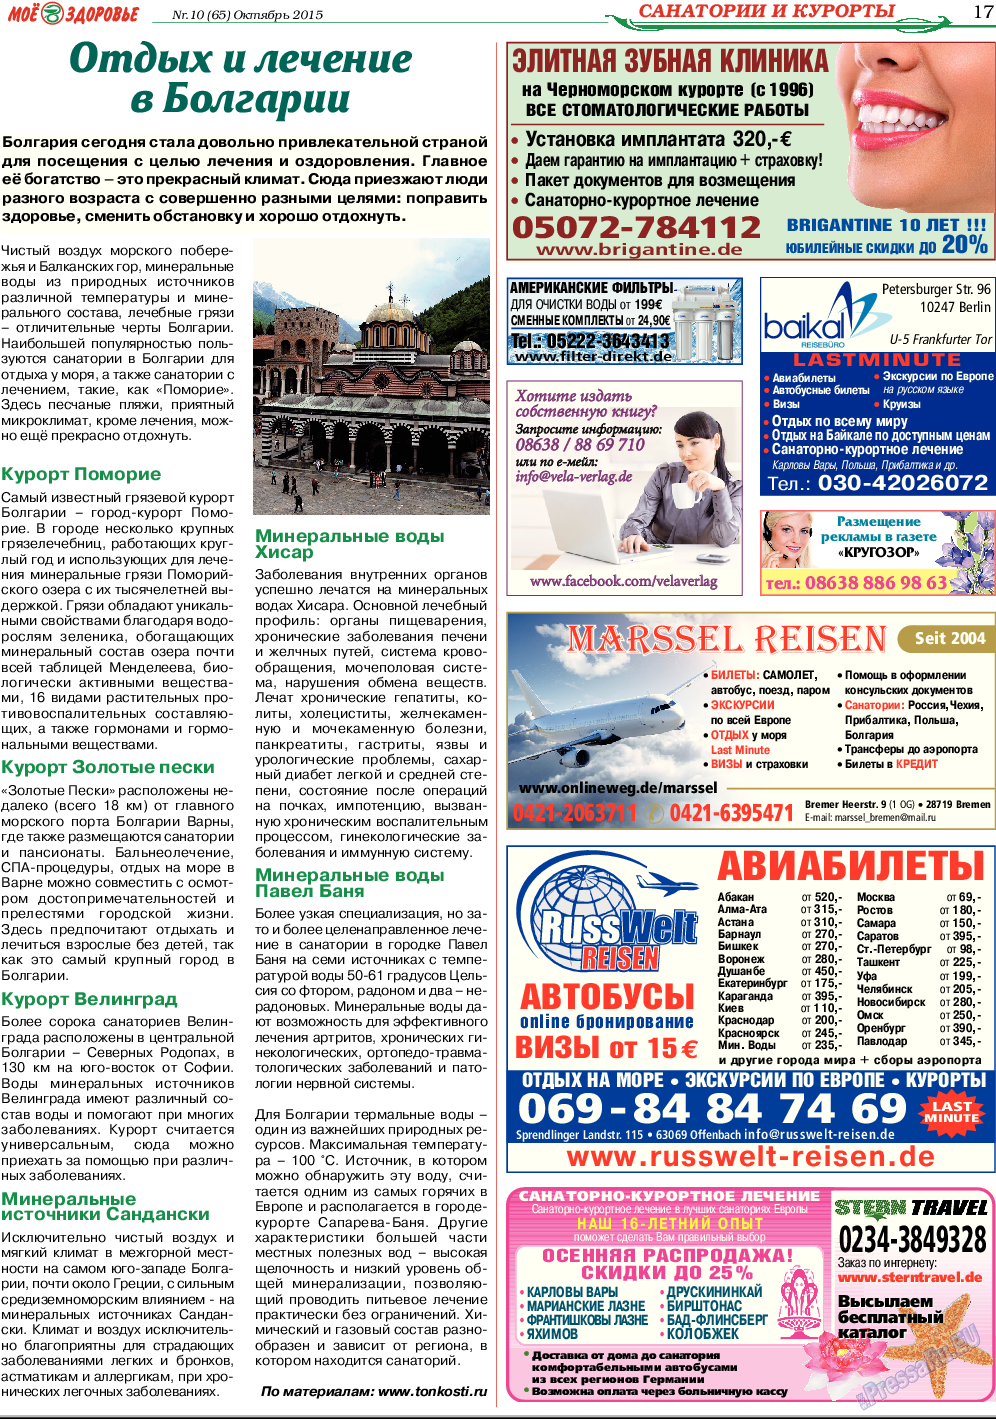 Кругозор, газета. 2015 №10 стр.17